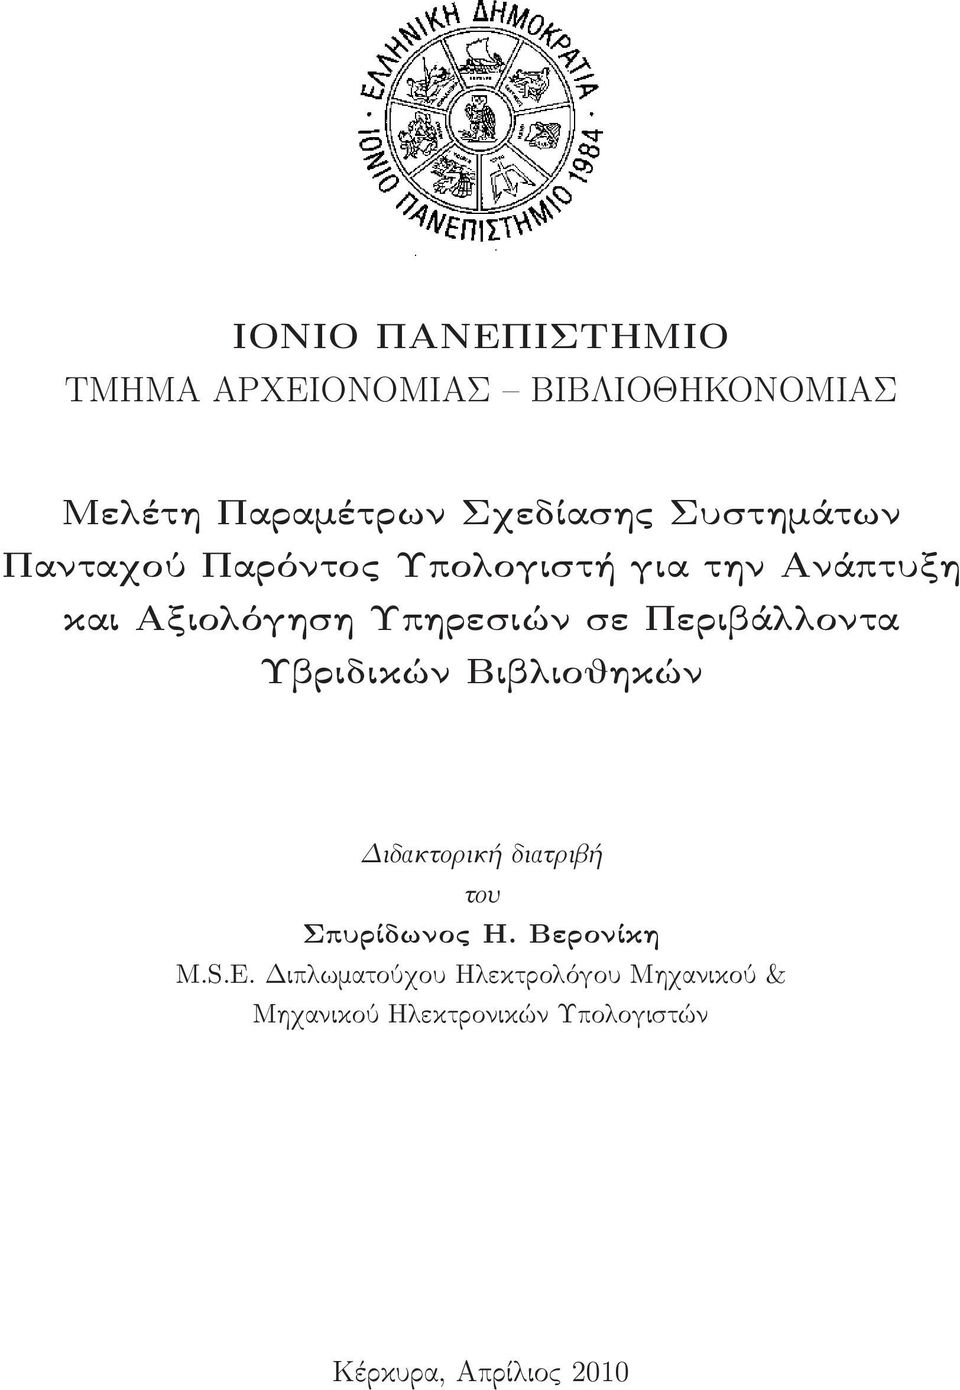 Περιβάλλοντα Υβριδικών Βιβλιοθηκών Διδακτορική διατριβή του Σπυρίδωνος Η. Βερονίκη M.S.E.